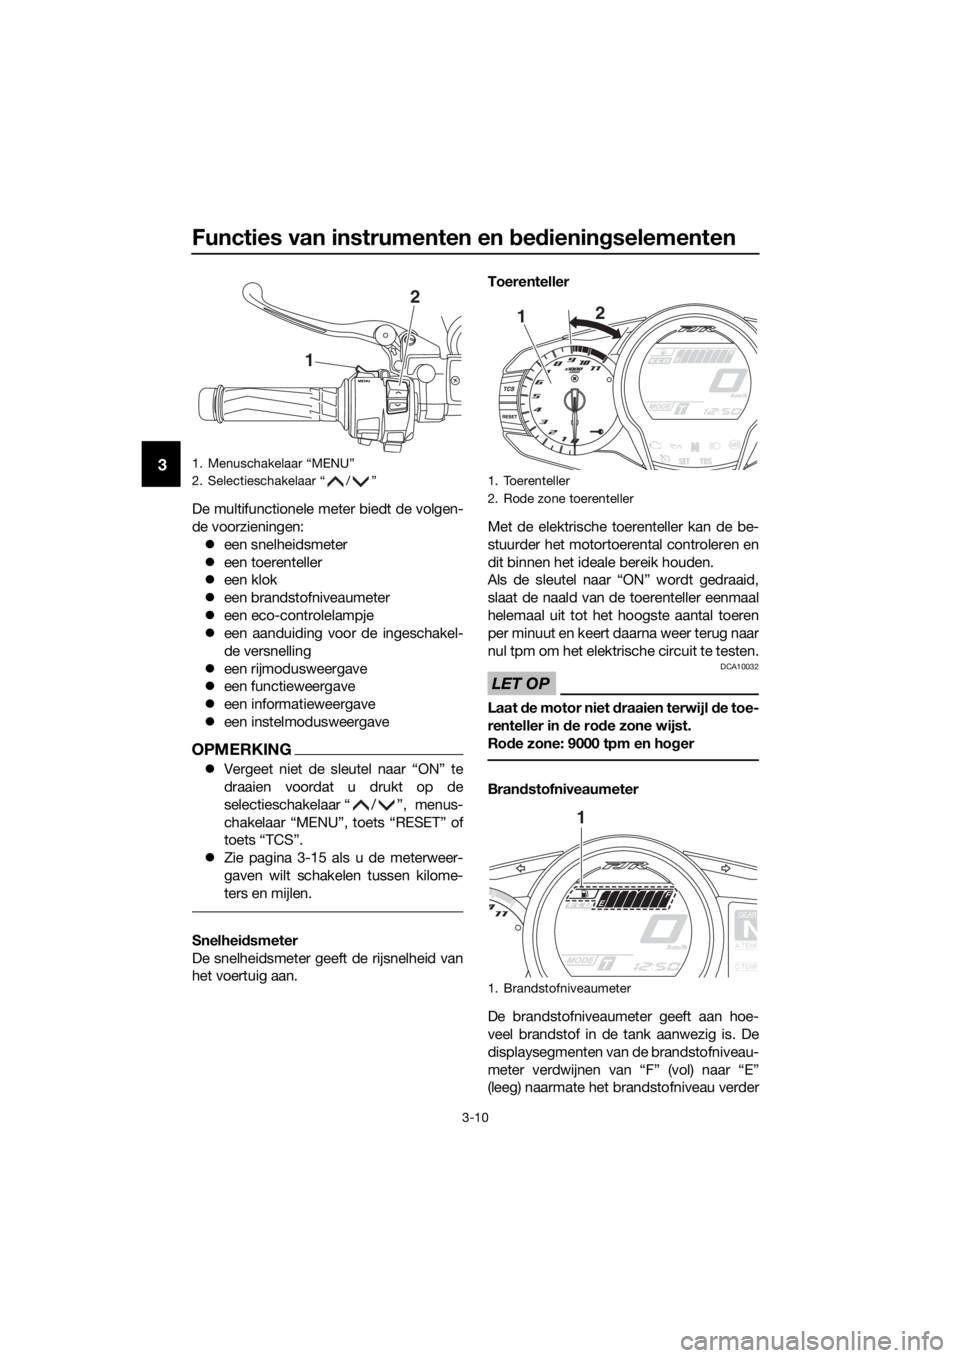 YAMAHA FJR1300A 2018  Instructieboekje (in Dutch) Functies van instrumenten en bed iening selementen
3-10
3
De multifunctionele meter biedt de volgen-
de voorzieningen:
 een snelheidsmeter
 een toerenteller
 een klok
 een brandstofniveaum